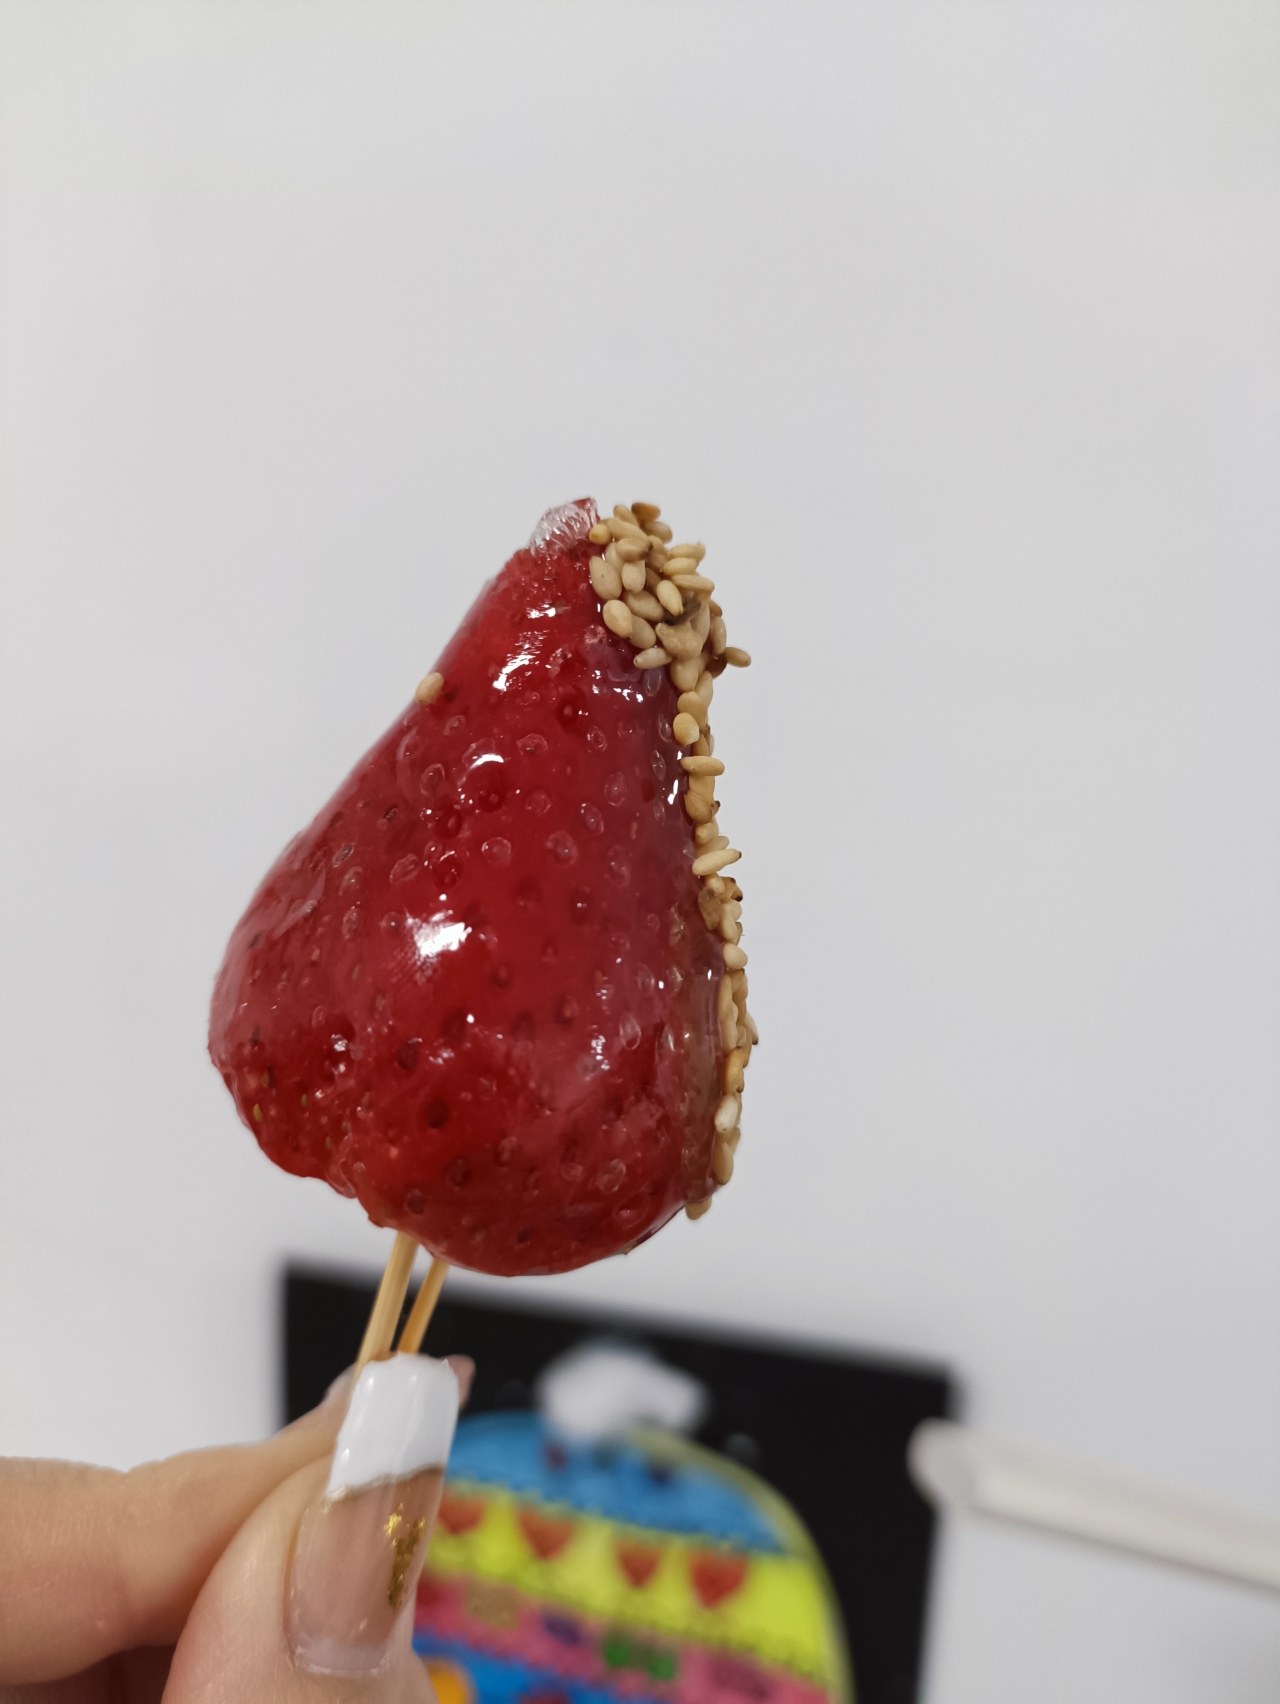 嘎嘣脆的冰糖草莓